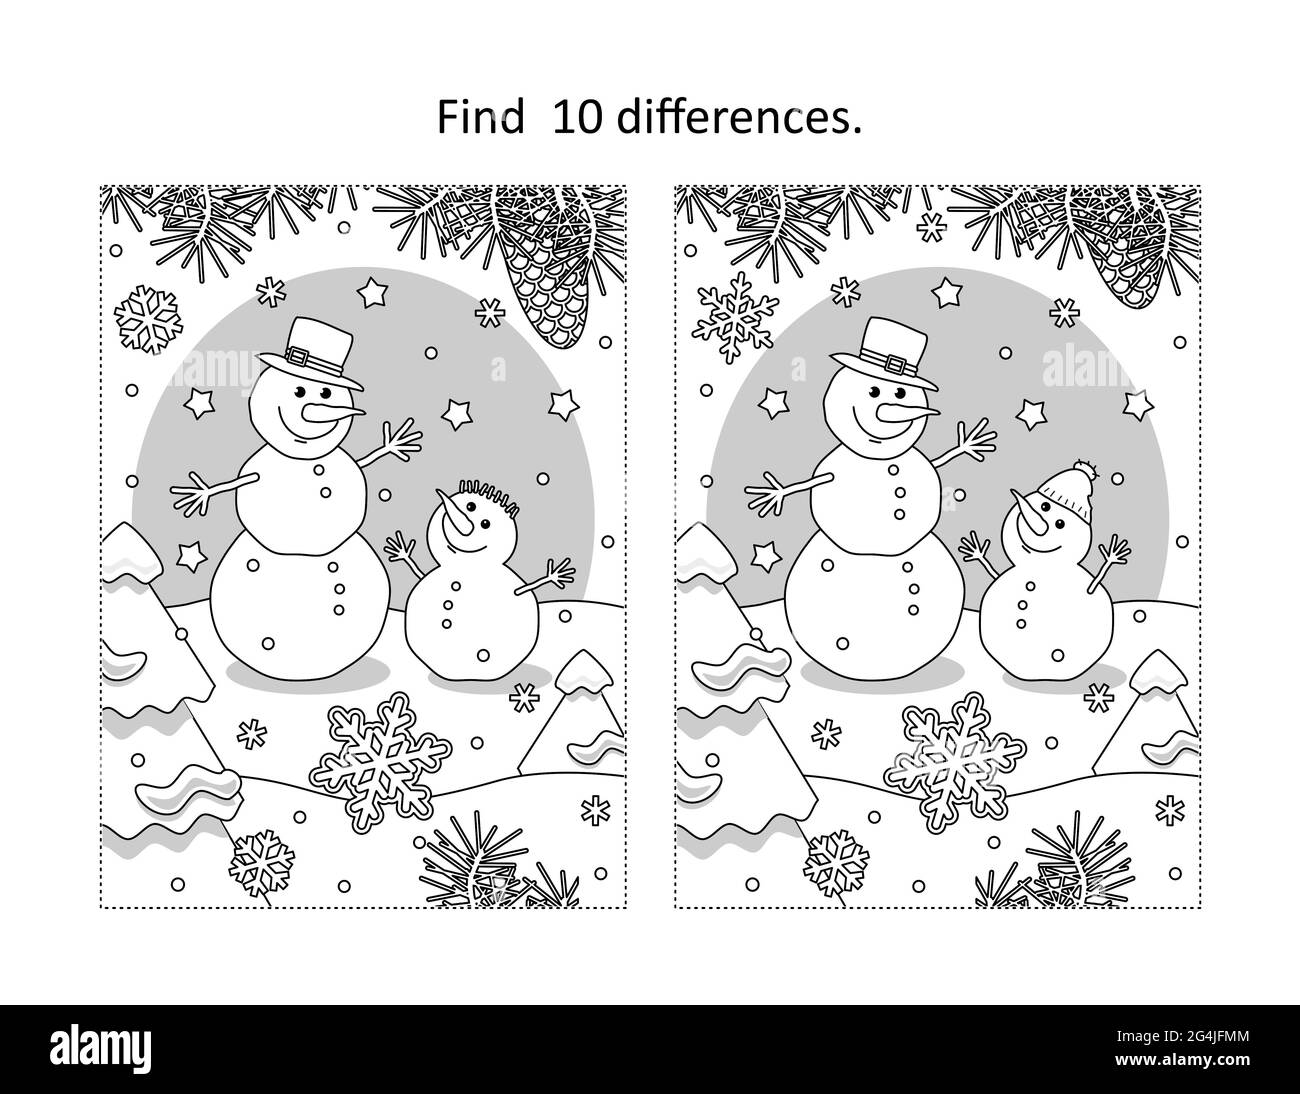 Finden Sie 10 Unterschiede visuelle Puzzle und Malvorlagen mit zwei Schneemänner Freunde Stockfoto